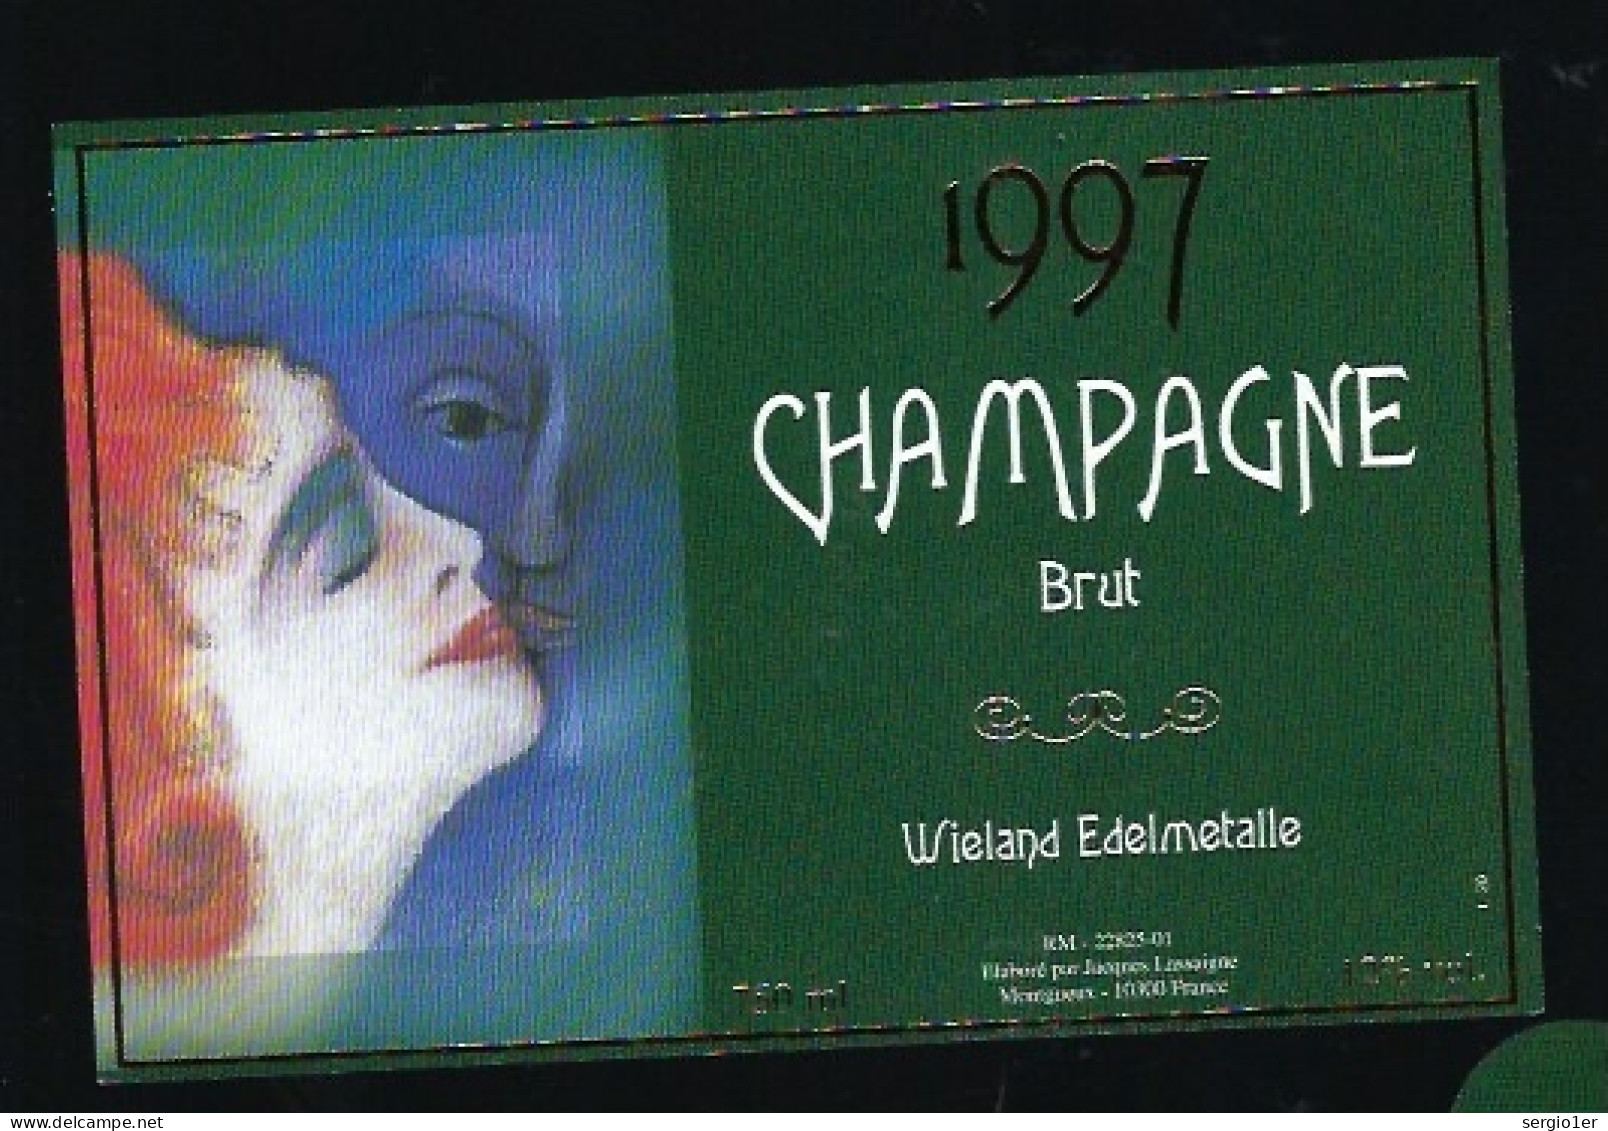 Etiquette Champagne Brut Millésime 1997 Wieland Edelmetalle  Jacques Lassaigne Montgueux Aube 10    " Femme" - Champagner